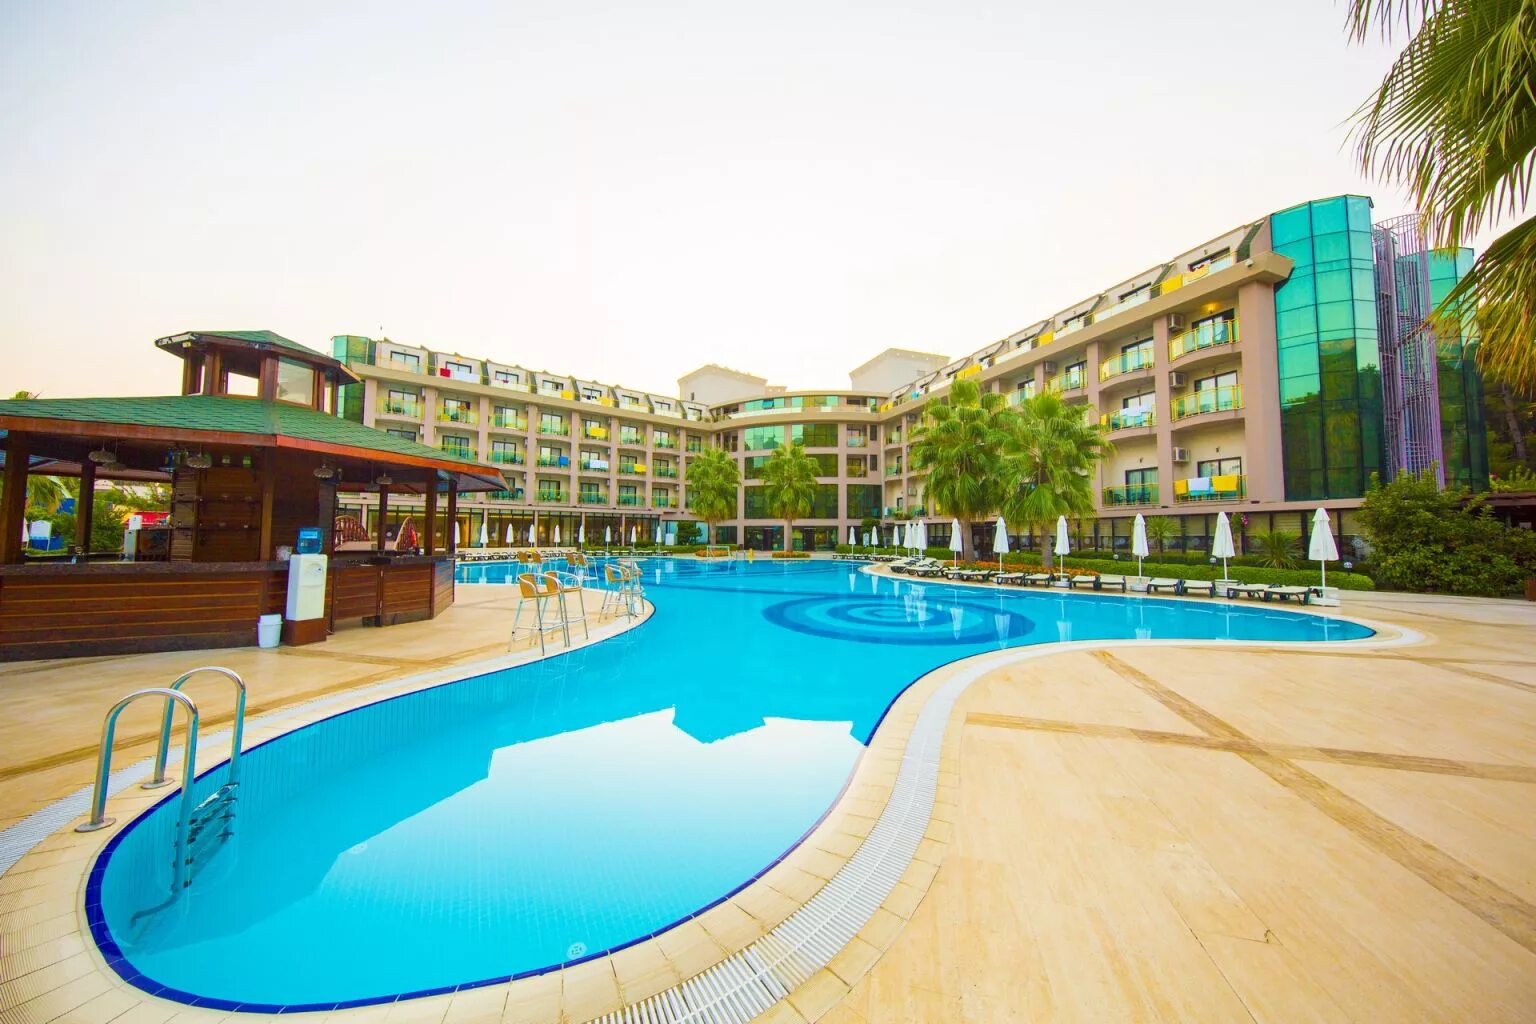 Отель Eldar Resort 4 Турция. Eldar garden hotel кемер